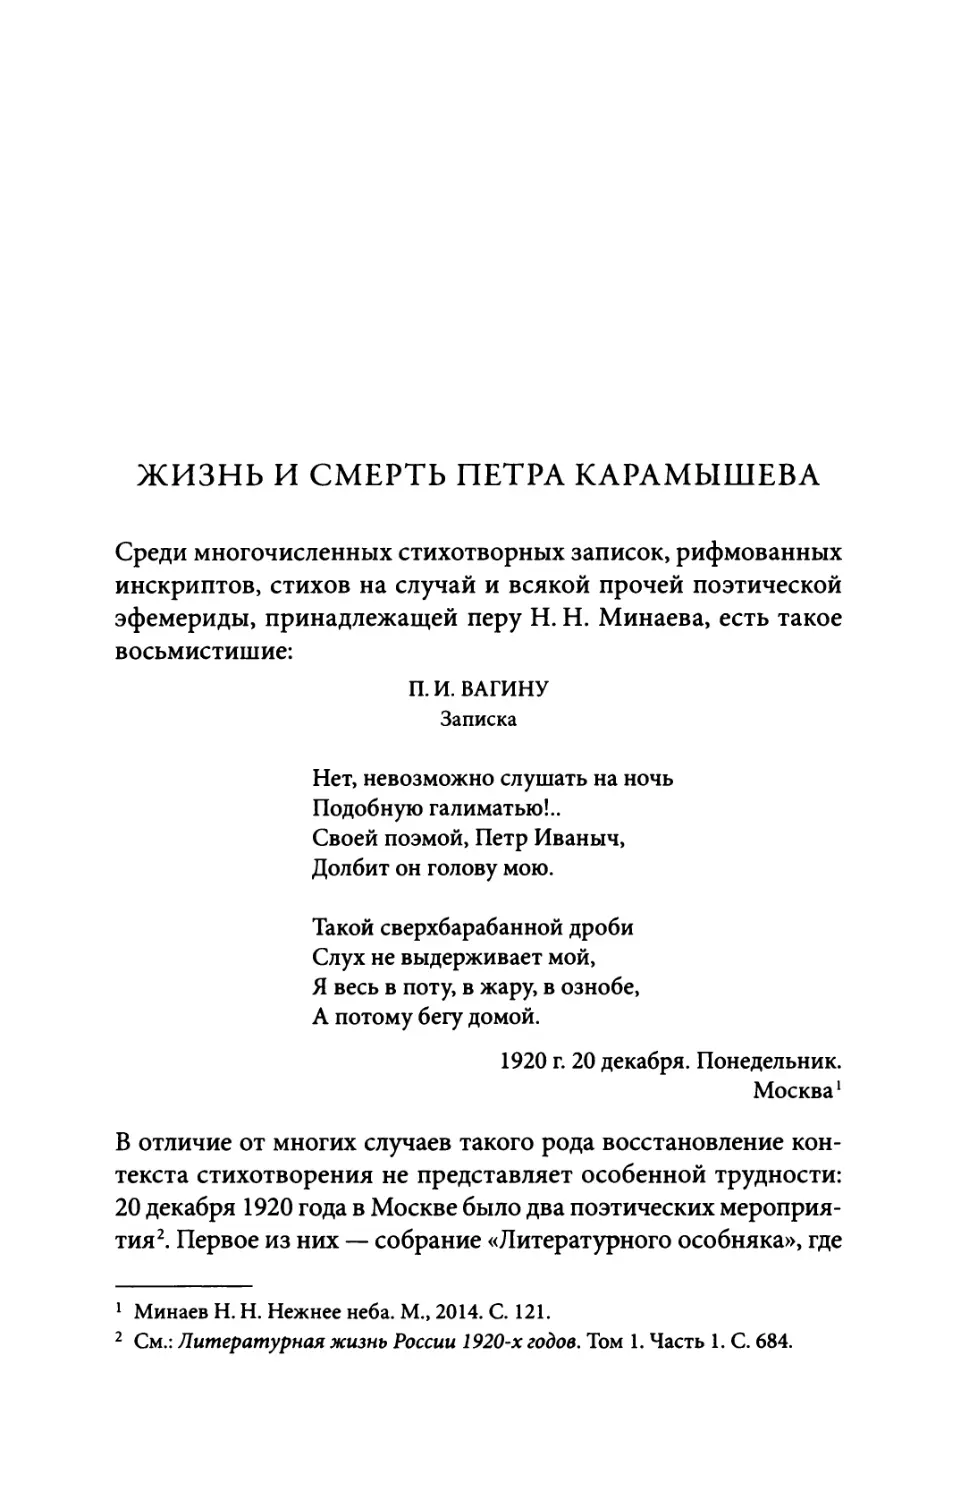 Жизнь и смерть Петра Карамышева